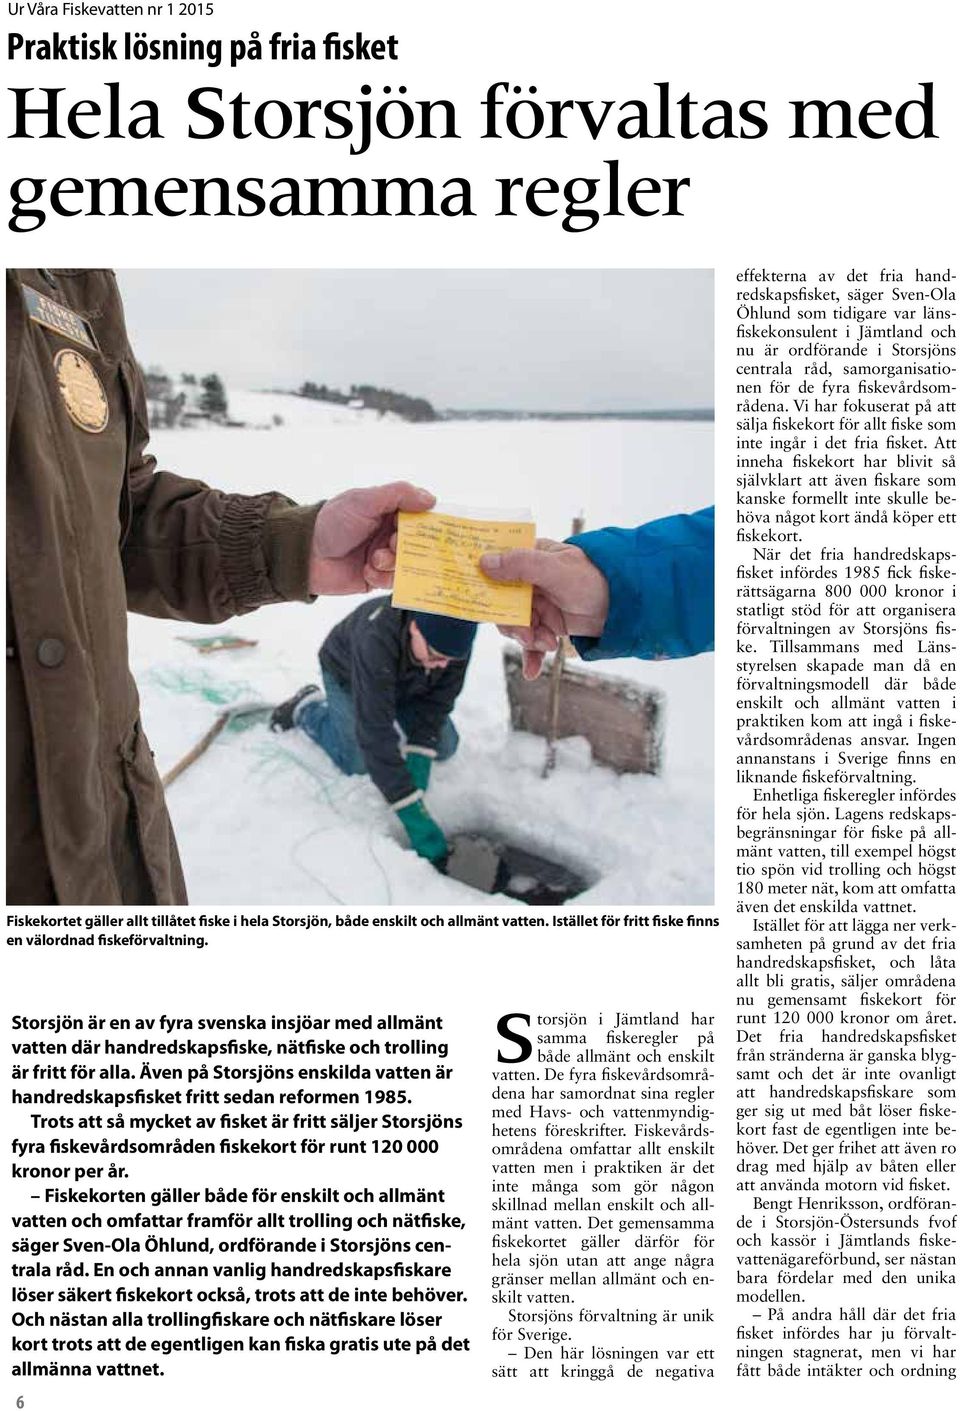 Även på Storsjöns enskilda vatten är handredskapsfisket fritt sedan reformen 1985.